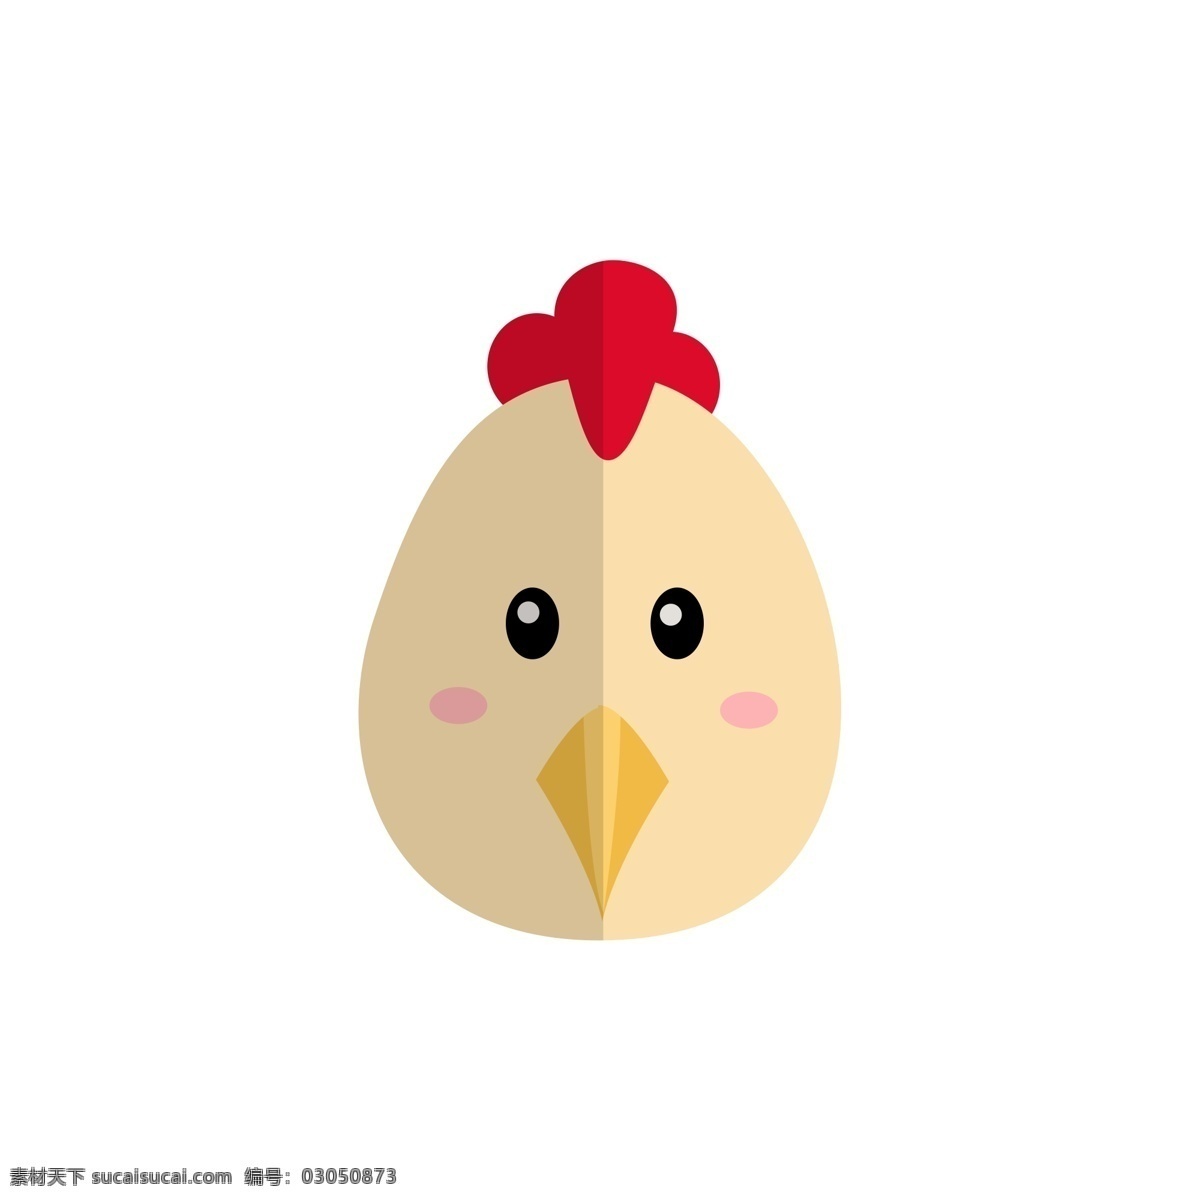 十二生肖 小鸡 卡通 可爱 头像 鸡 可爱头像 卡通图标 小鸡头像 小鸡图标